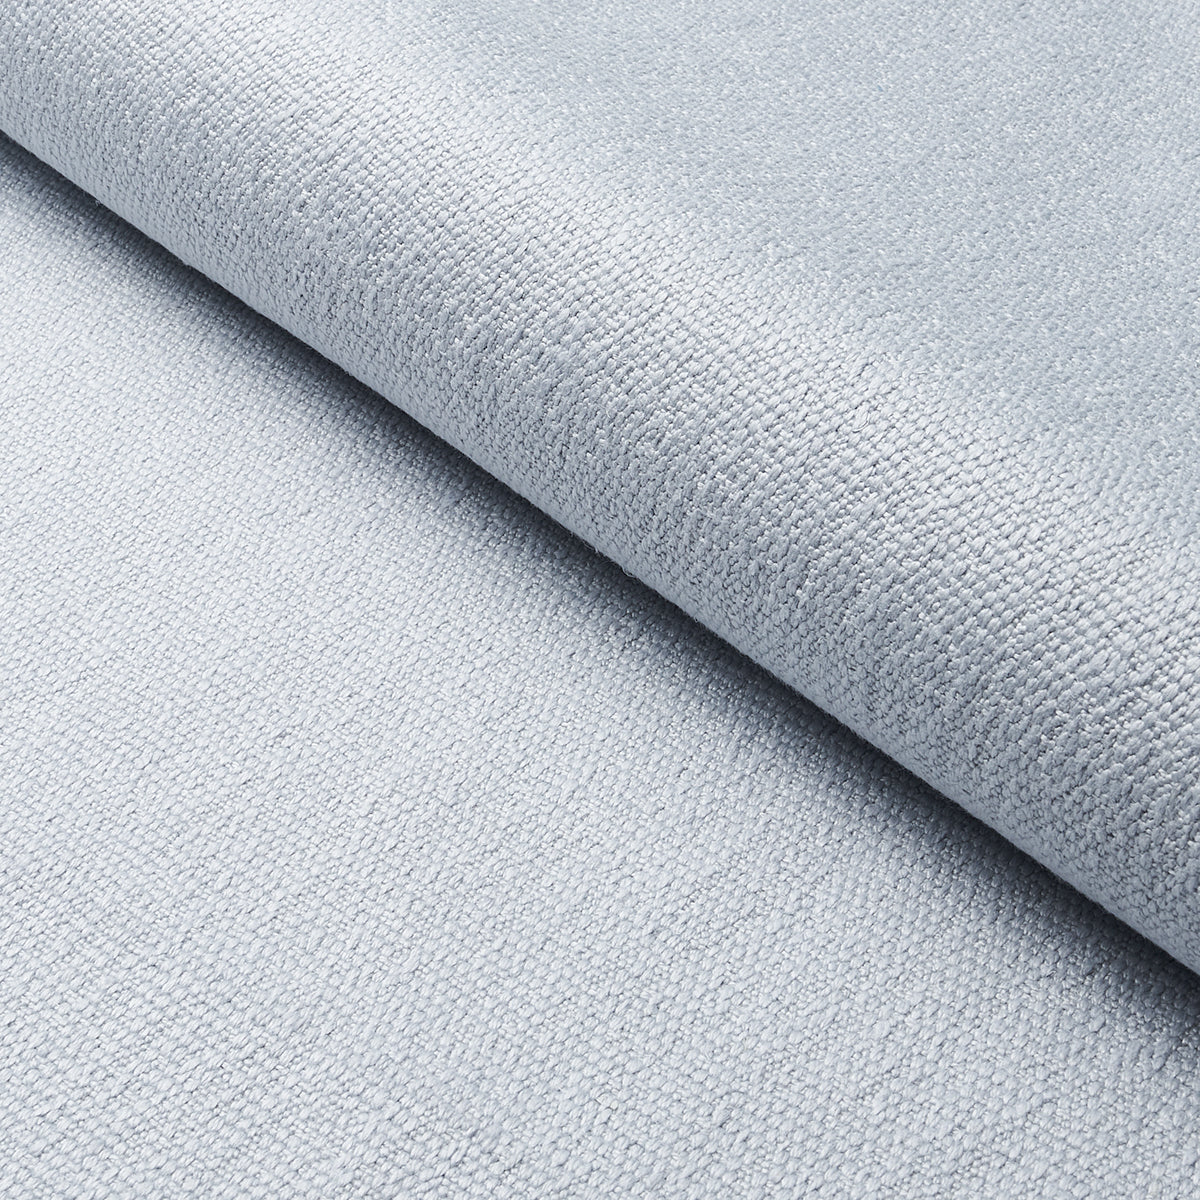 Purchase 75685 | Azulejos, Mist - Schumacher Fabric